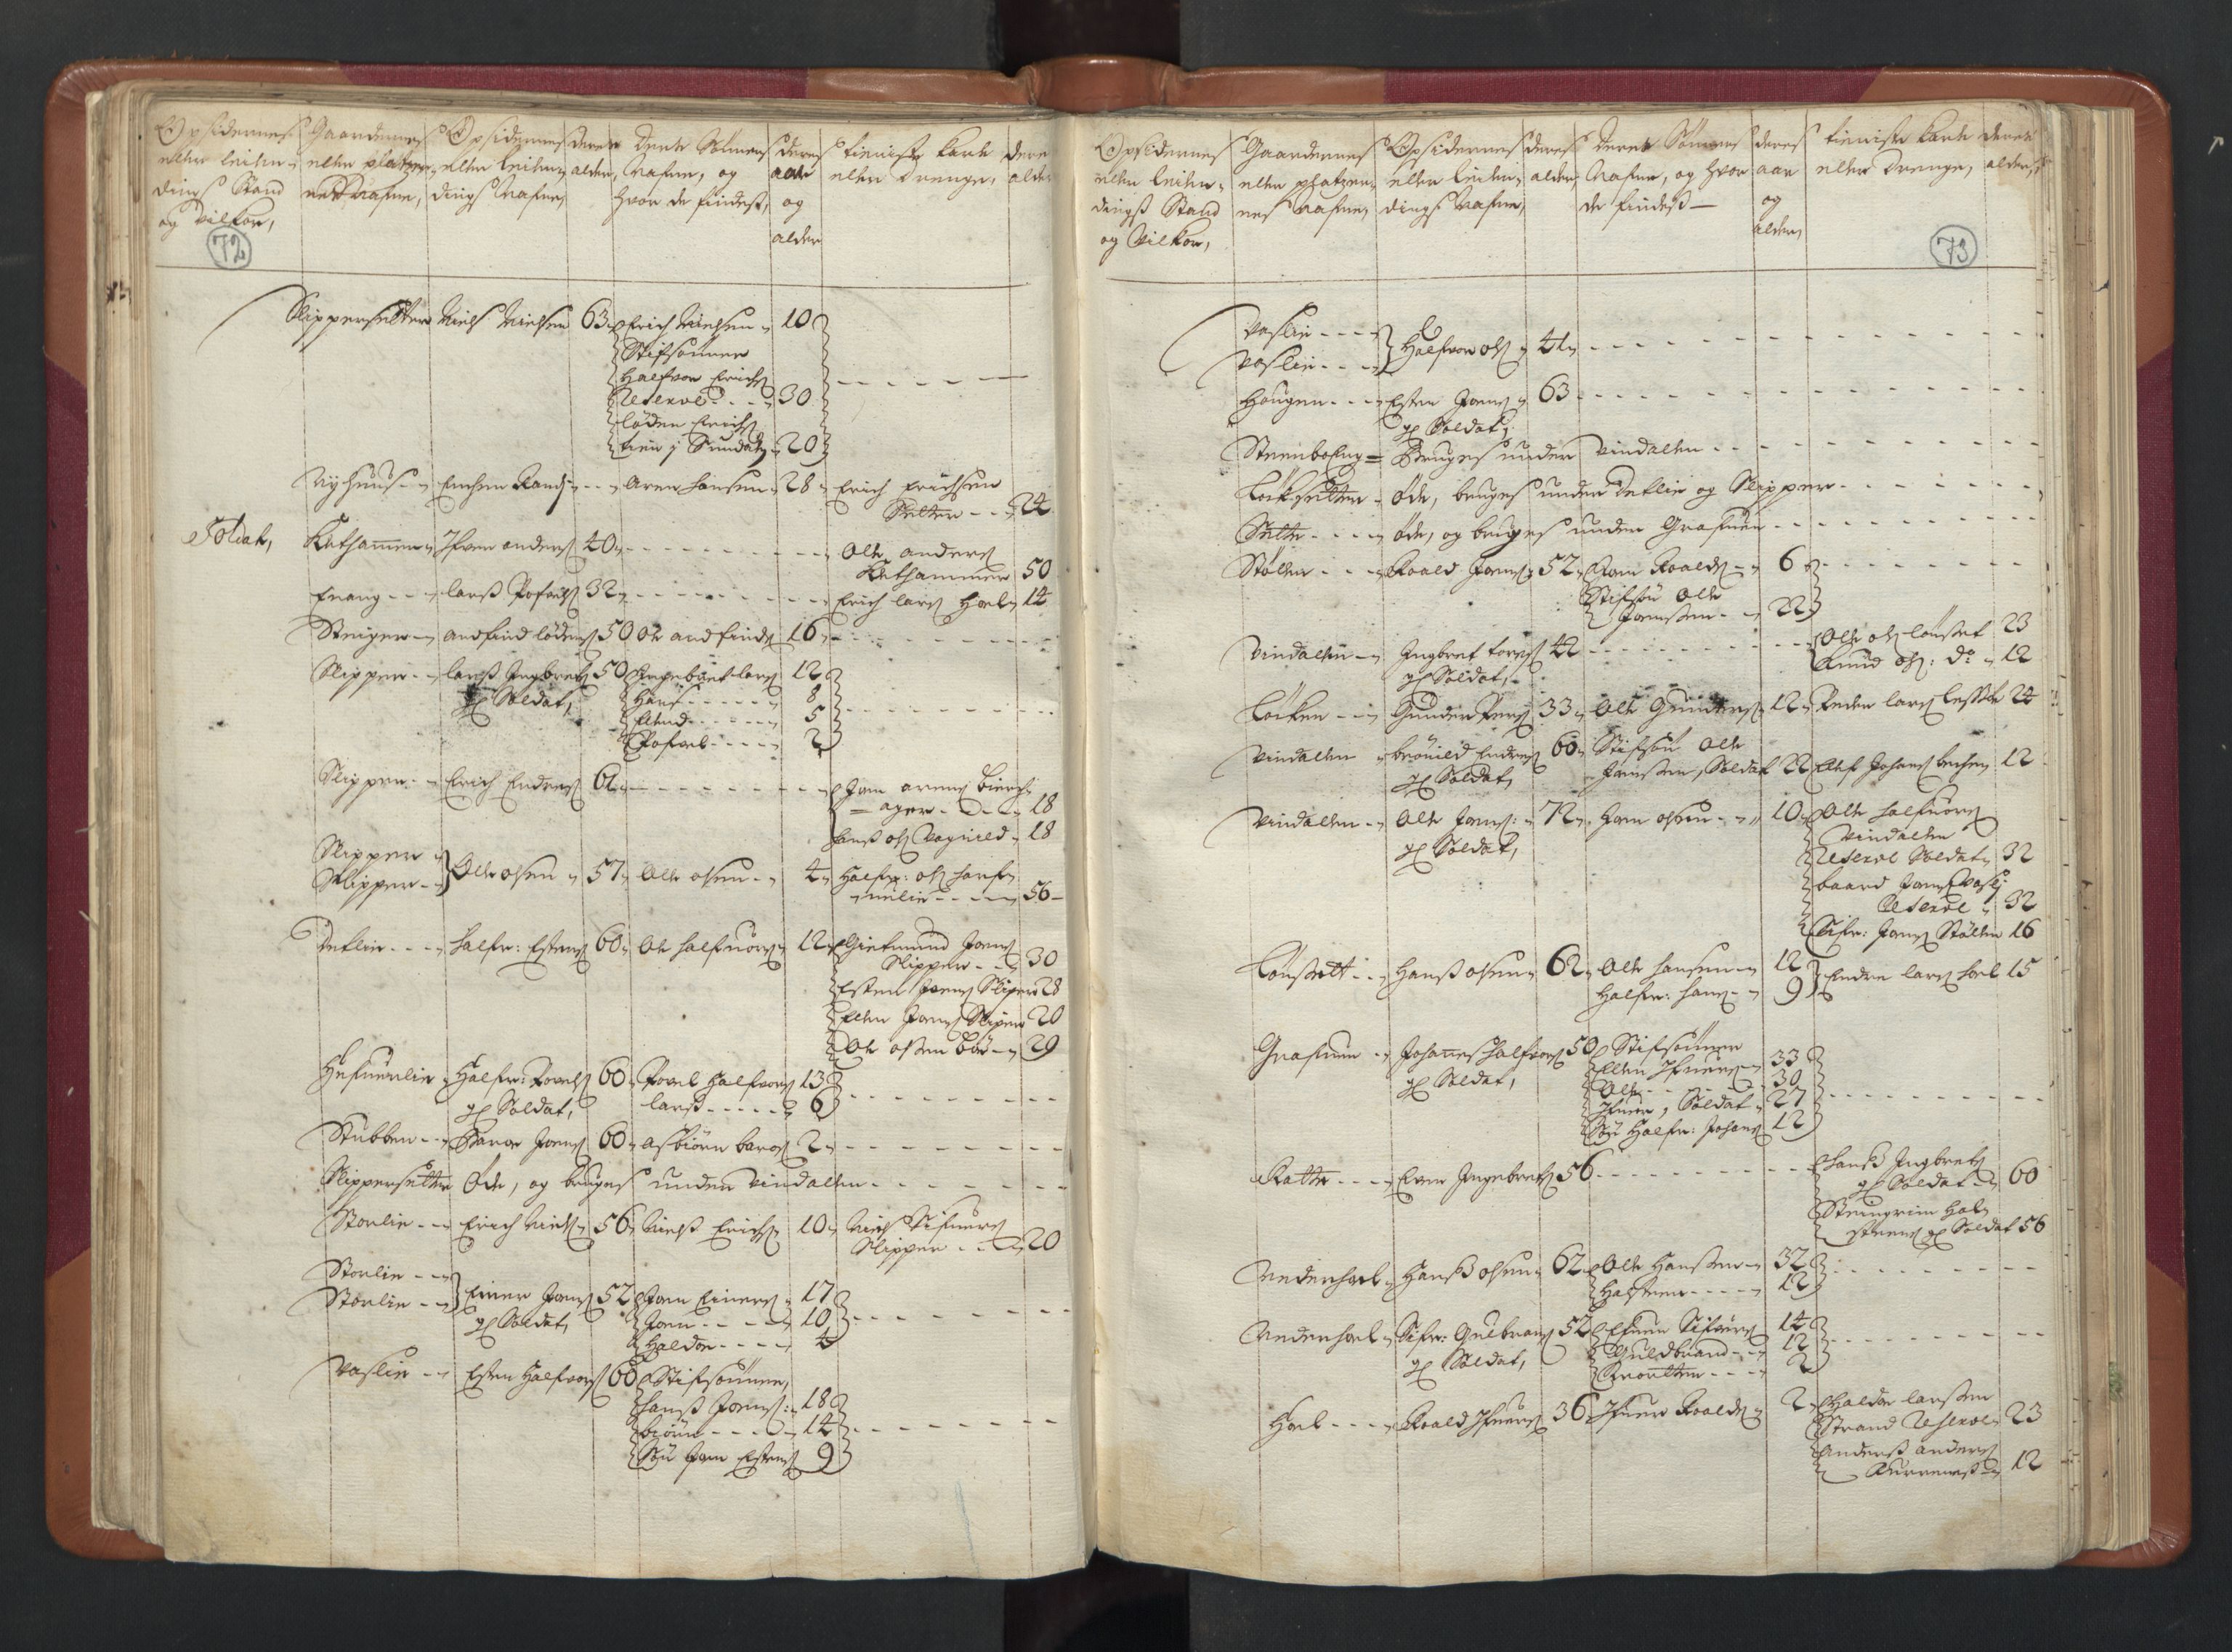 RA, Manntallet 1701, nr. 13: Orkdal fogderi og Gauldal fogderi med Røros kobberverk, 1701, s. 72-73